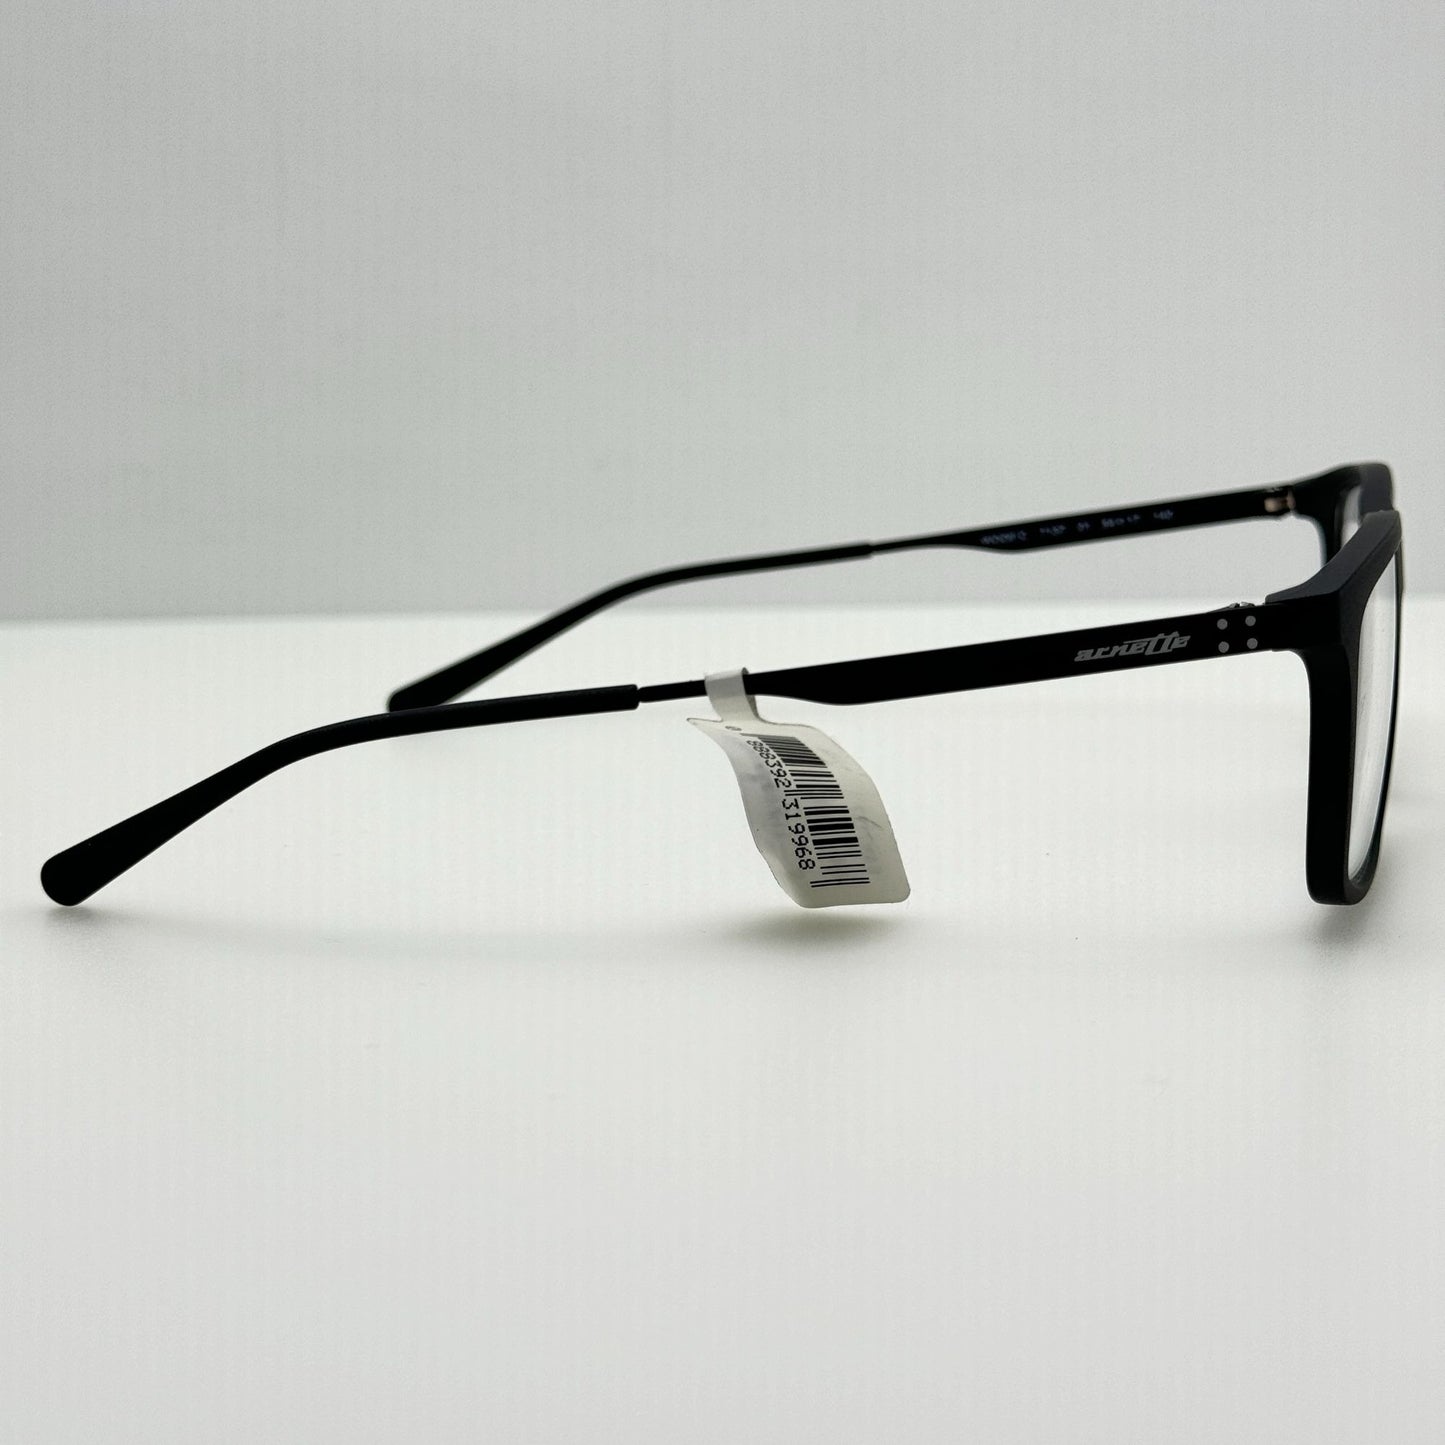 Arnette Eyeglasses Eye Glasses Frames 7137 01 Woot! C 54-17-140